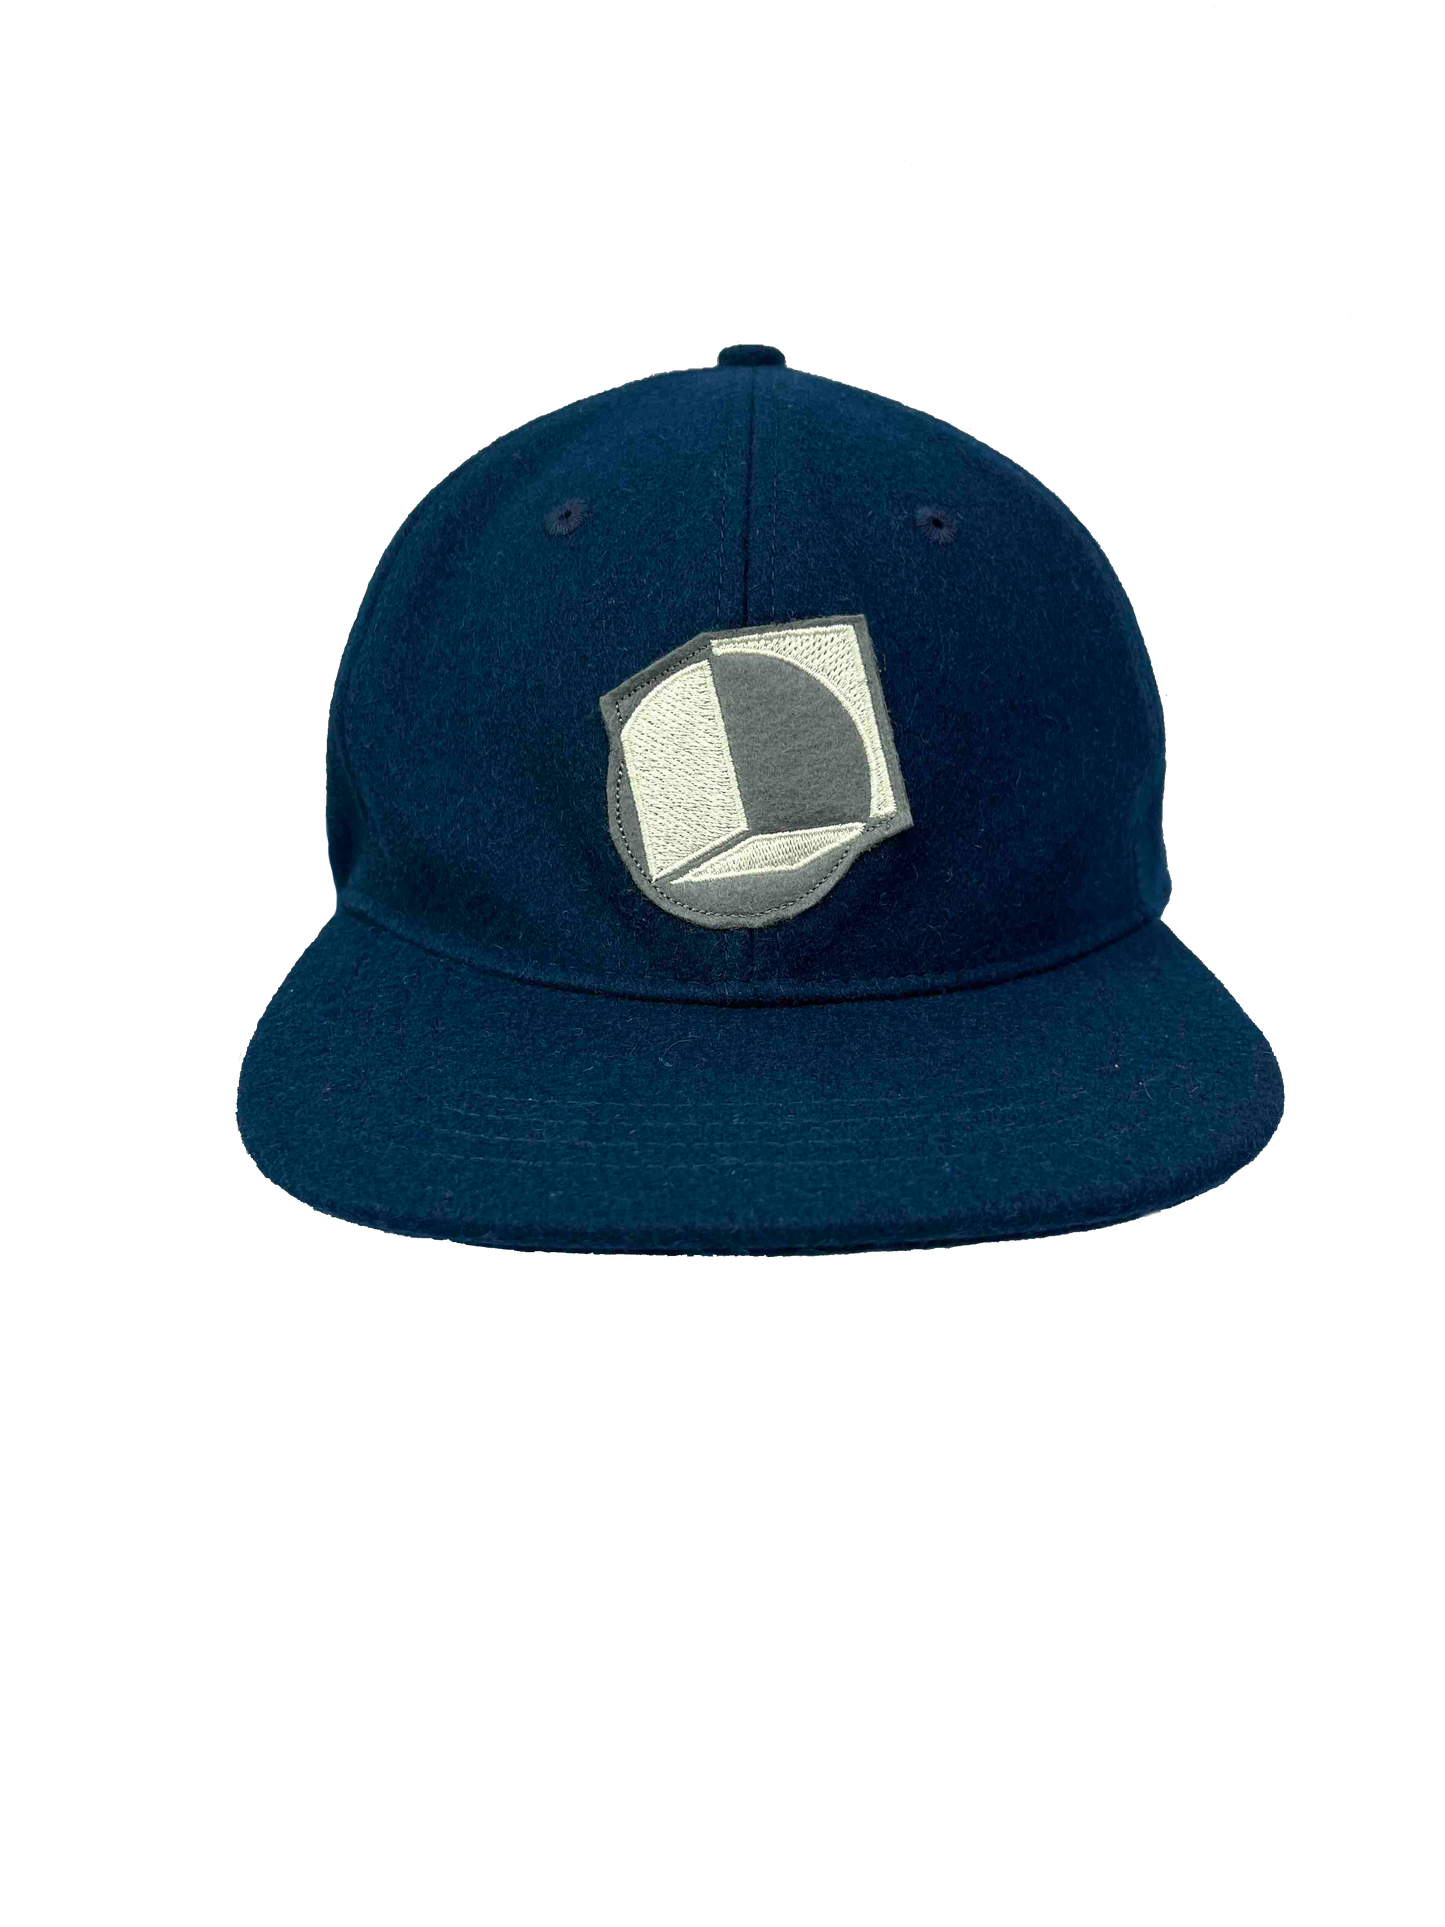 Square Peg/ Round Hole Felt Hat